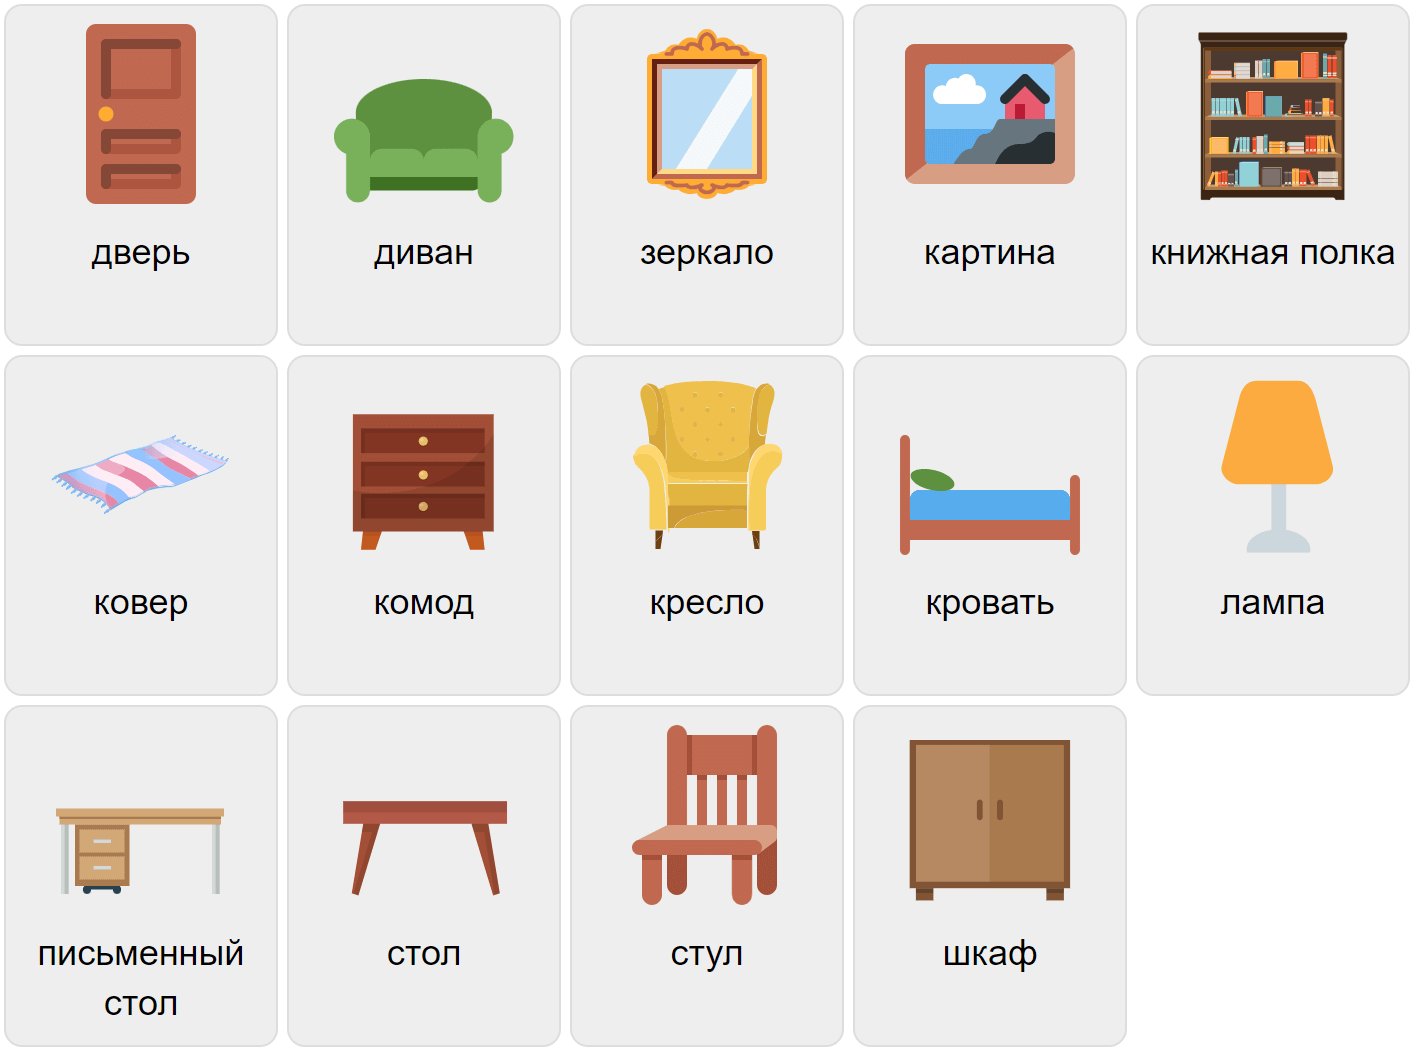 Furniture in Russian